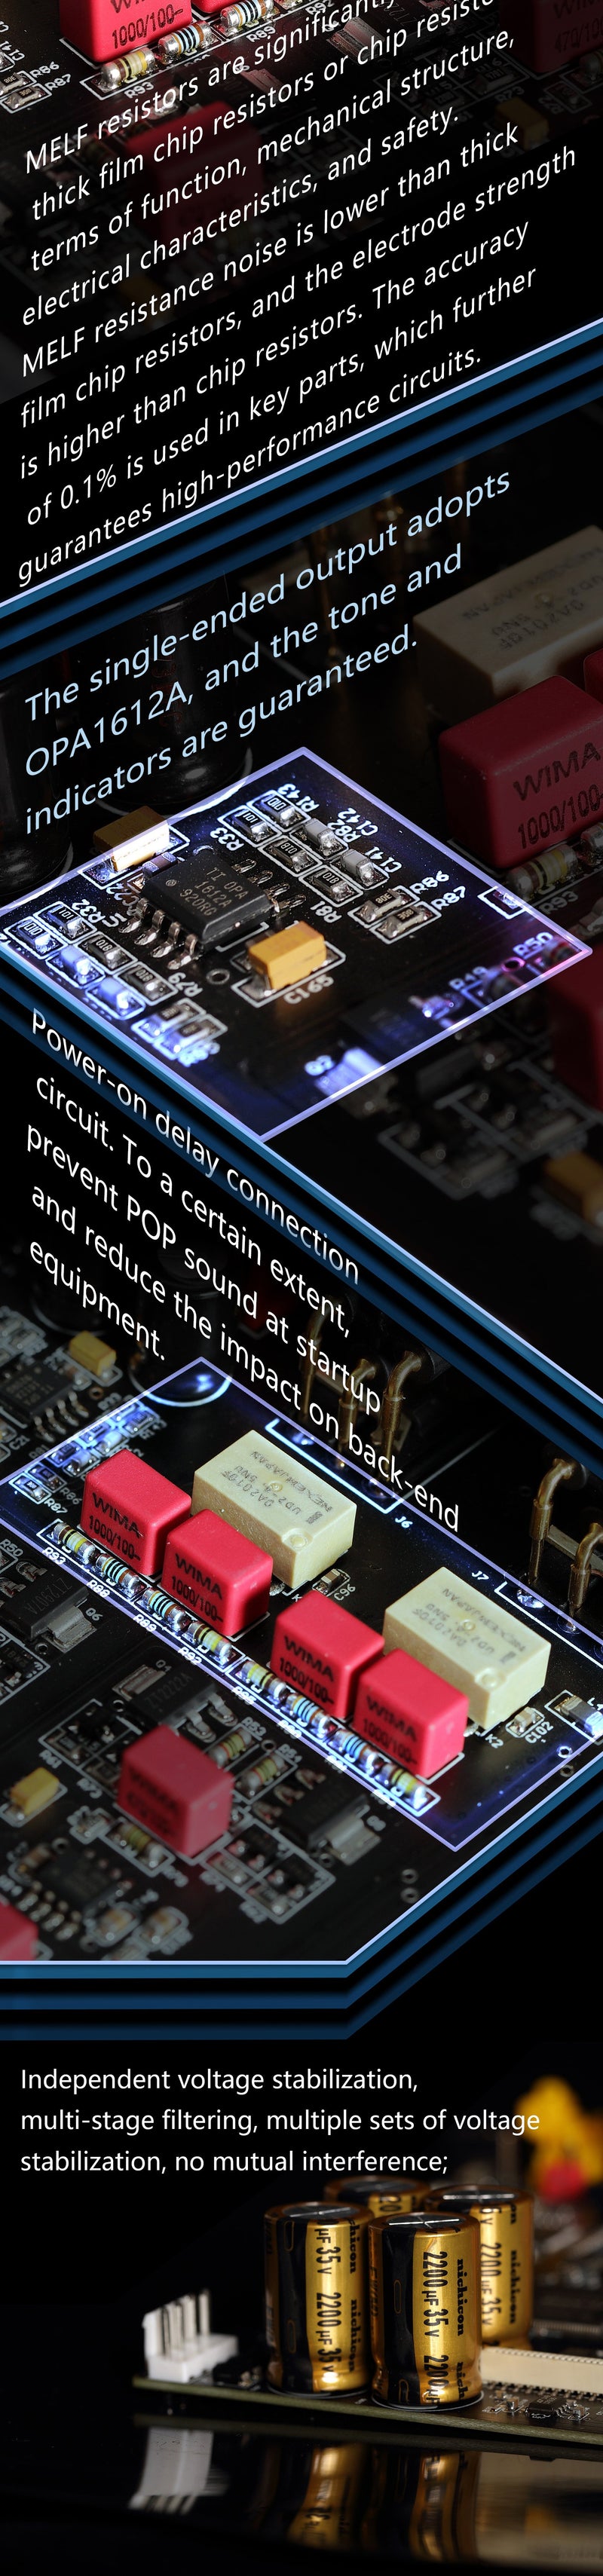 Apos Audio Gustard DAC (Digital-to-Analog Converter) Gustard X16 MQA DAC (Apos Certified)